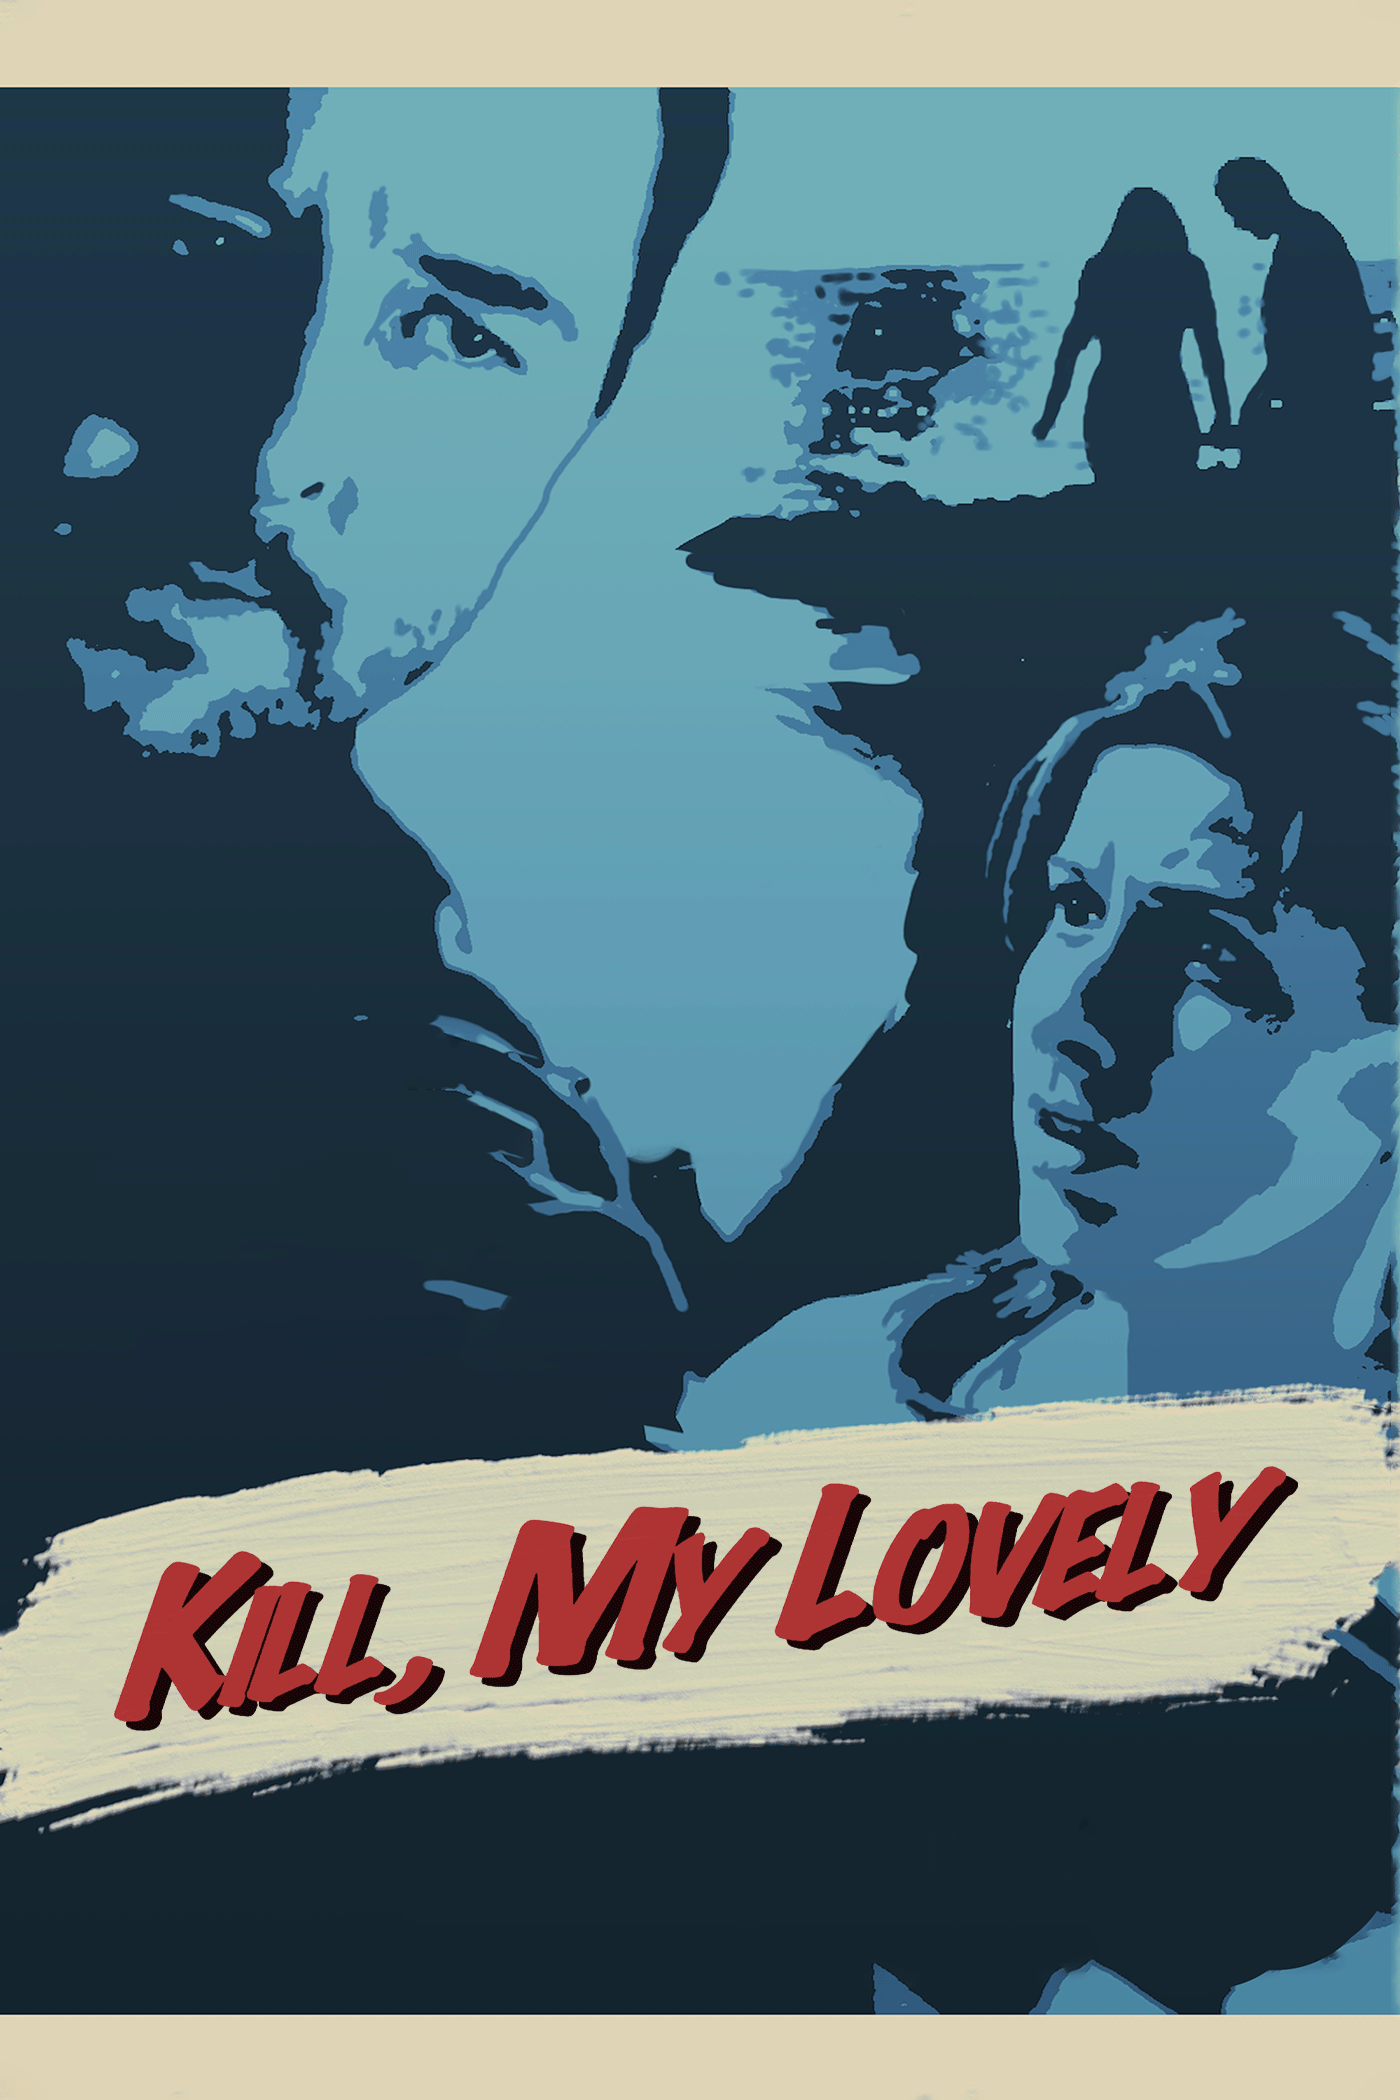 Kill, My Lovely